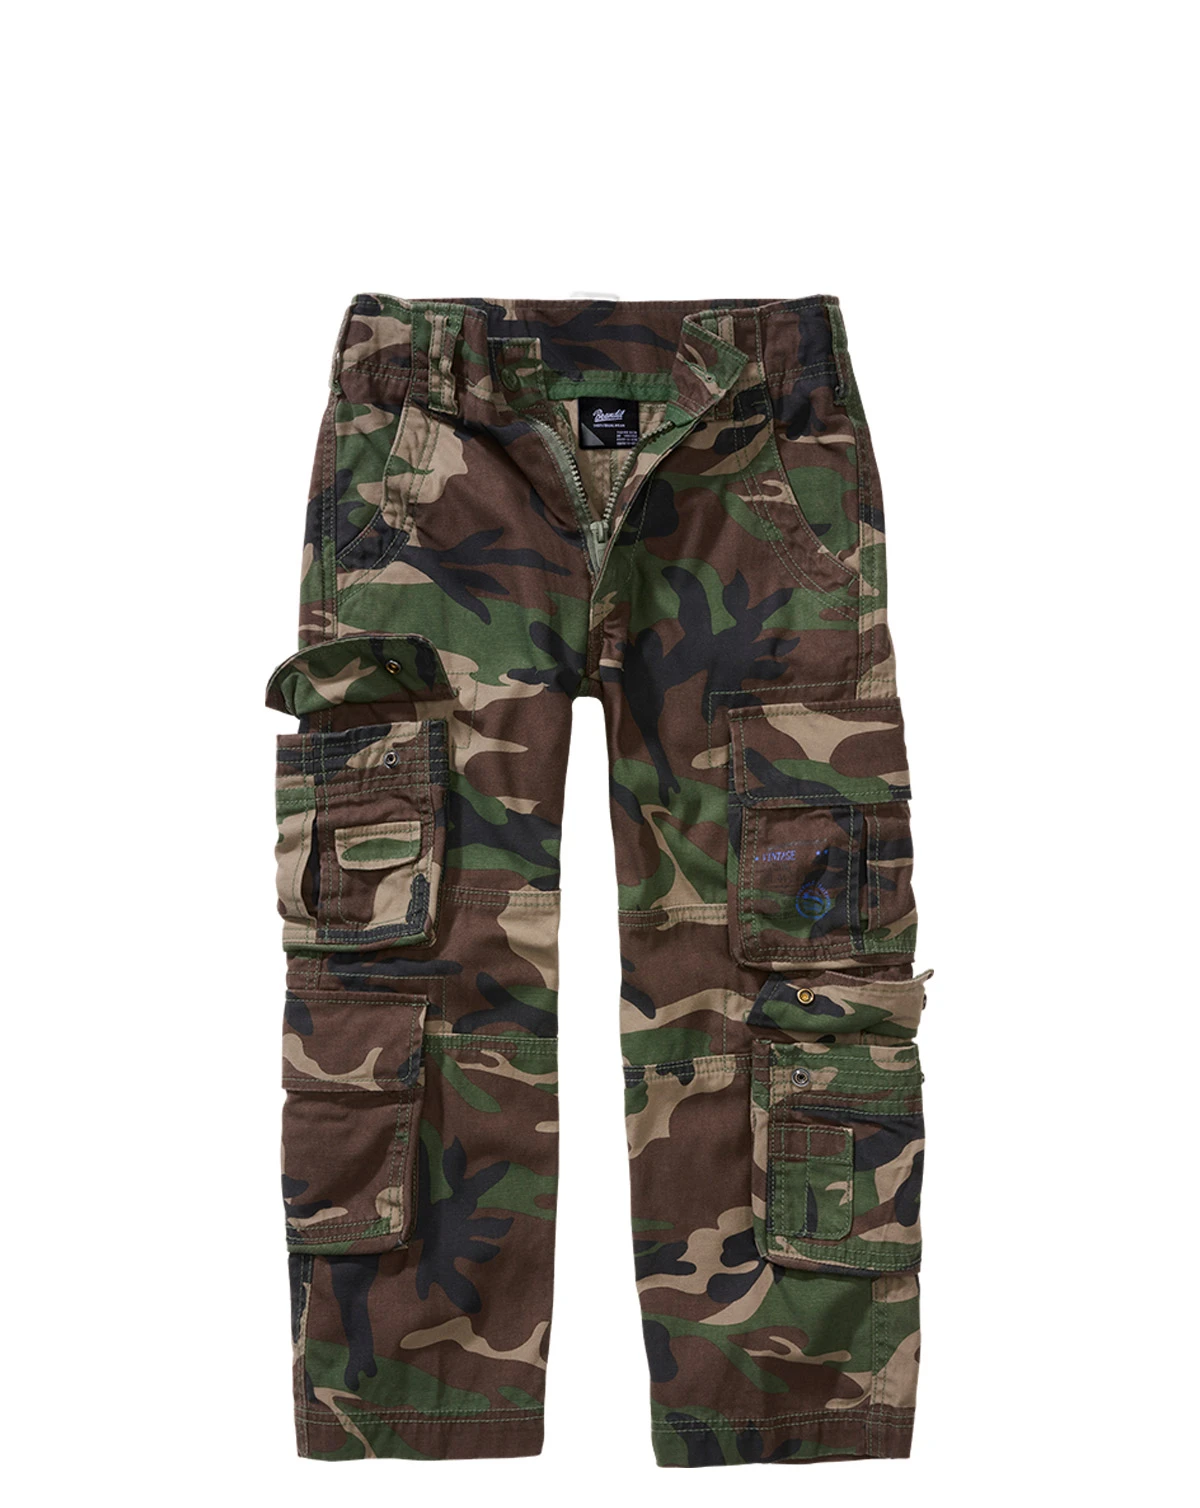 Kør væk Kurv Fange Armytøj til børn - Camouflage Og Militær tøj til børn